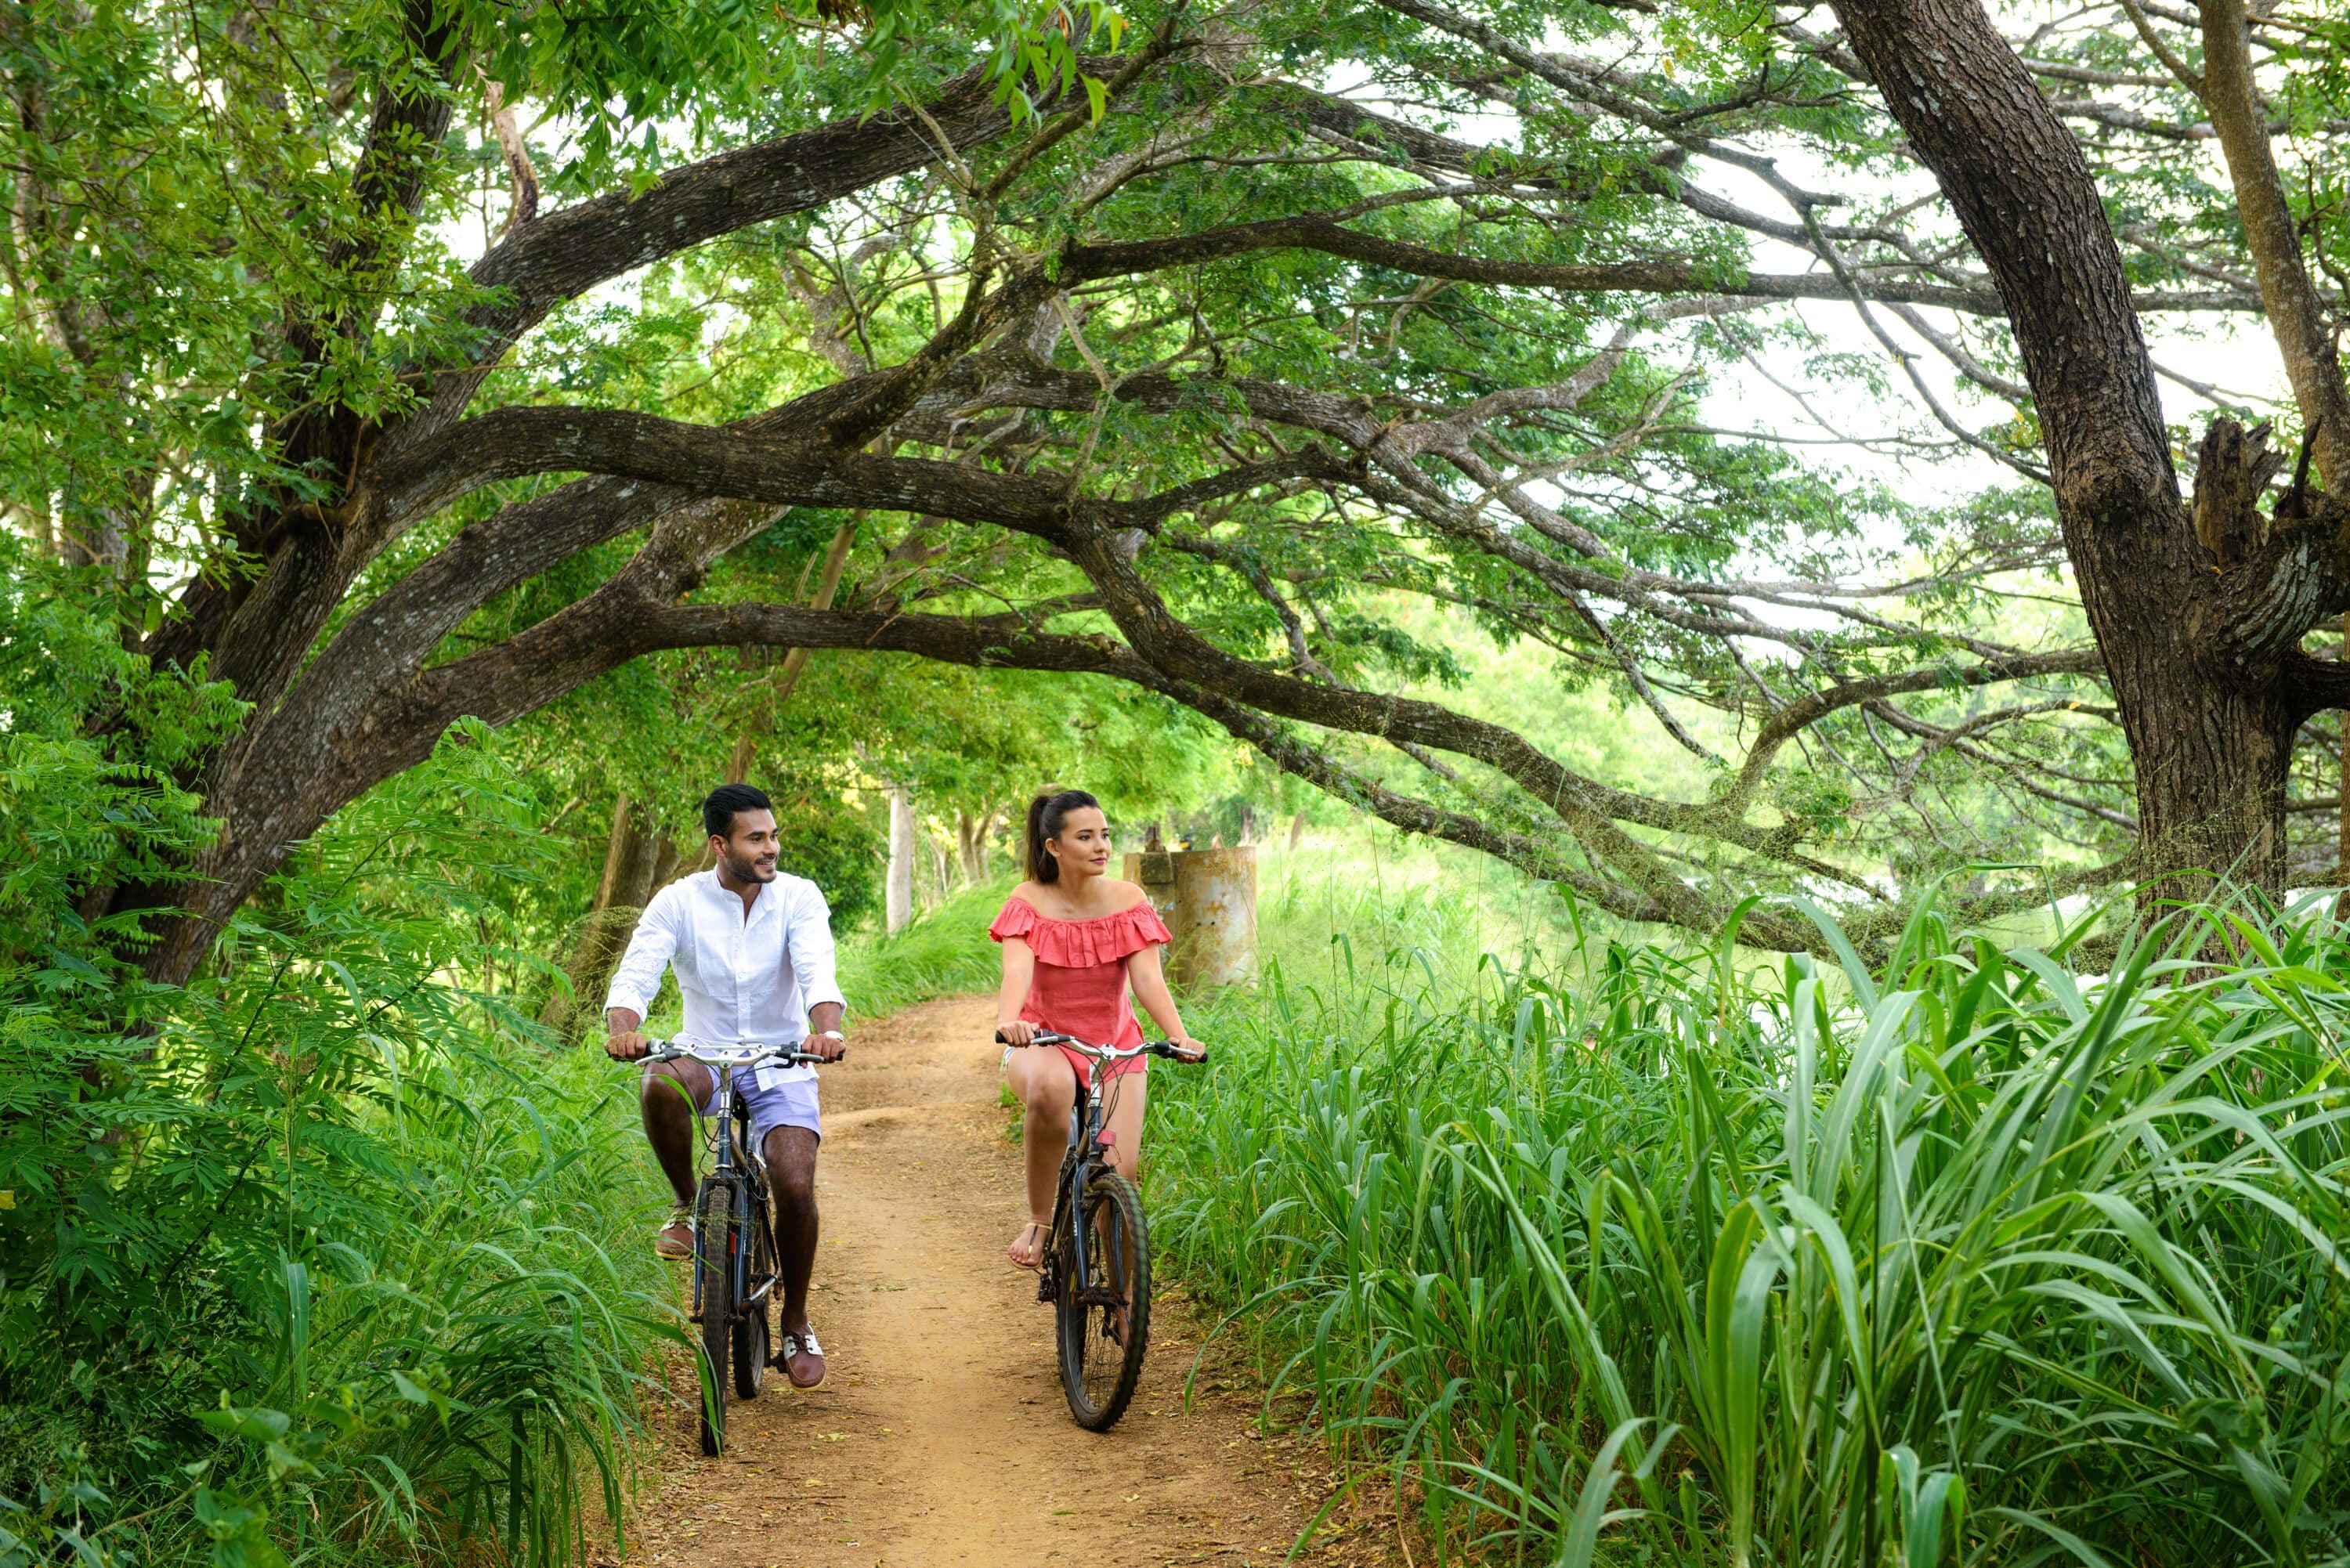 The cyclists ride in beautiful nature in Sigiriya area in Sri Lanka